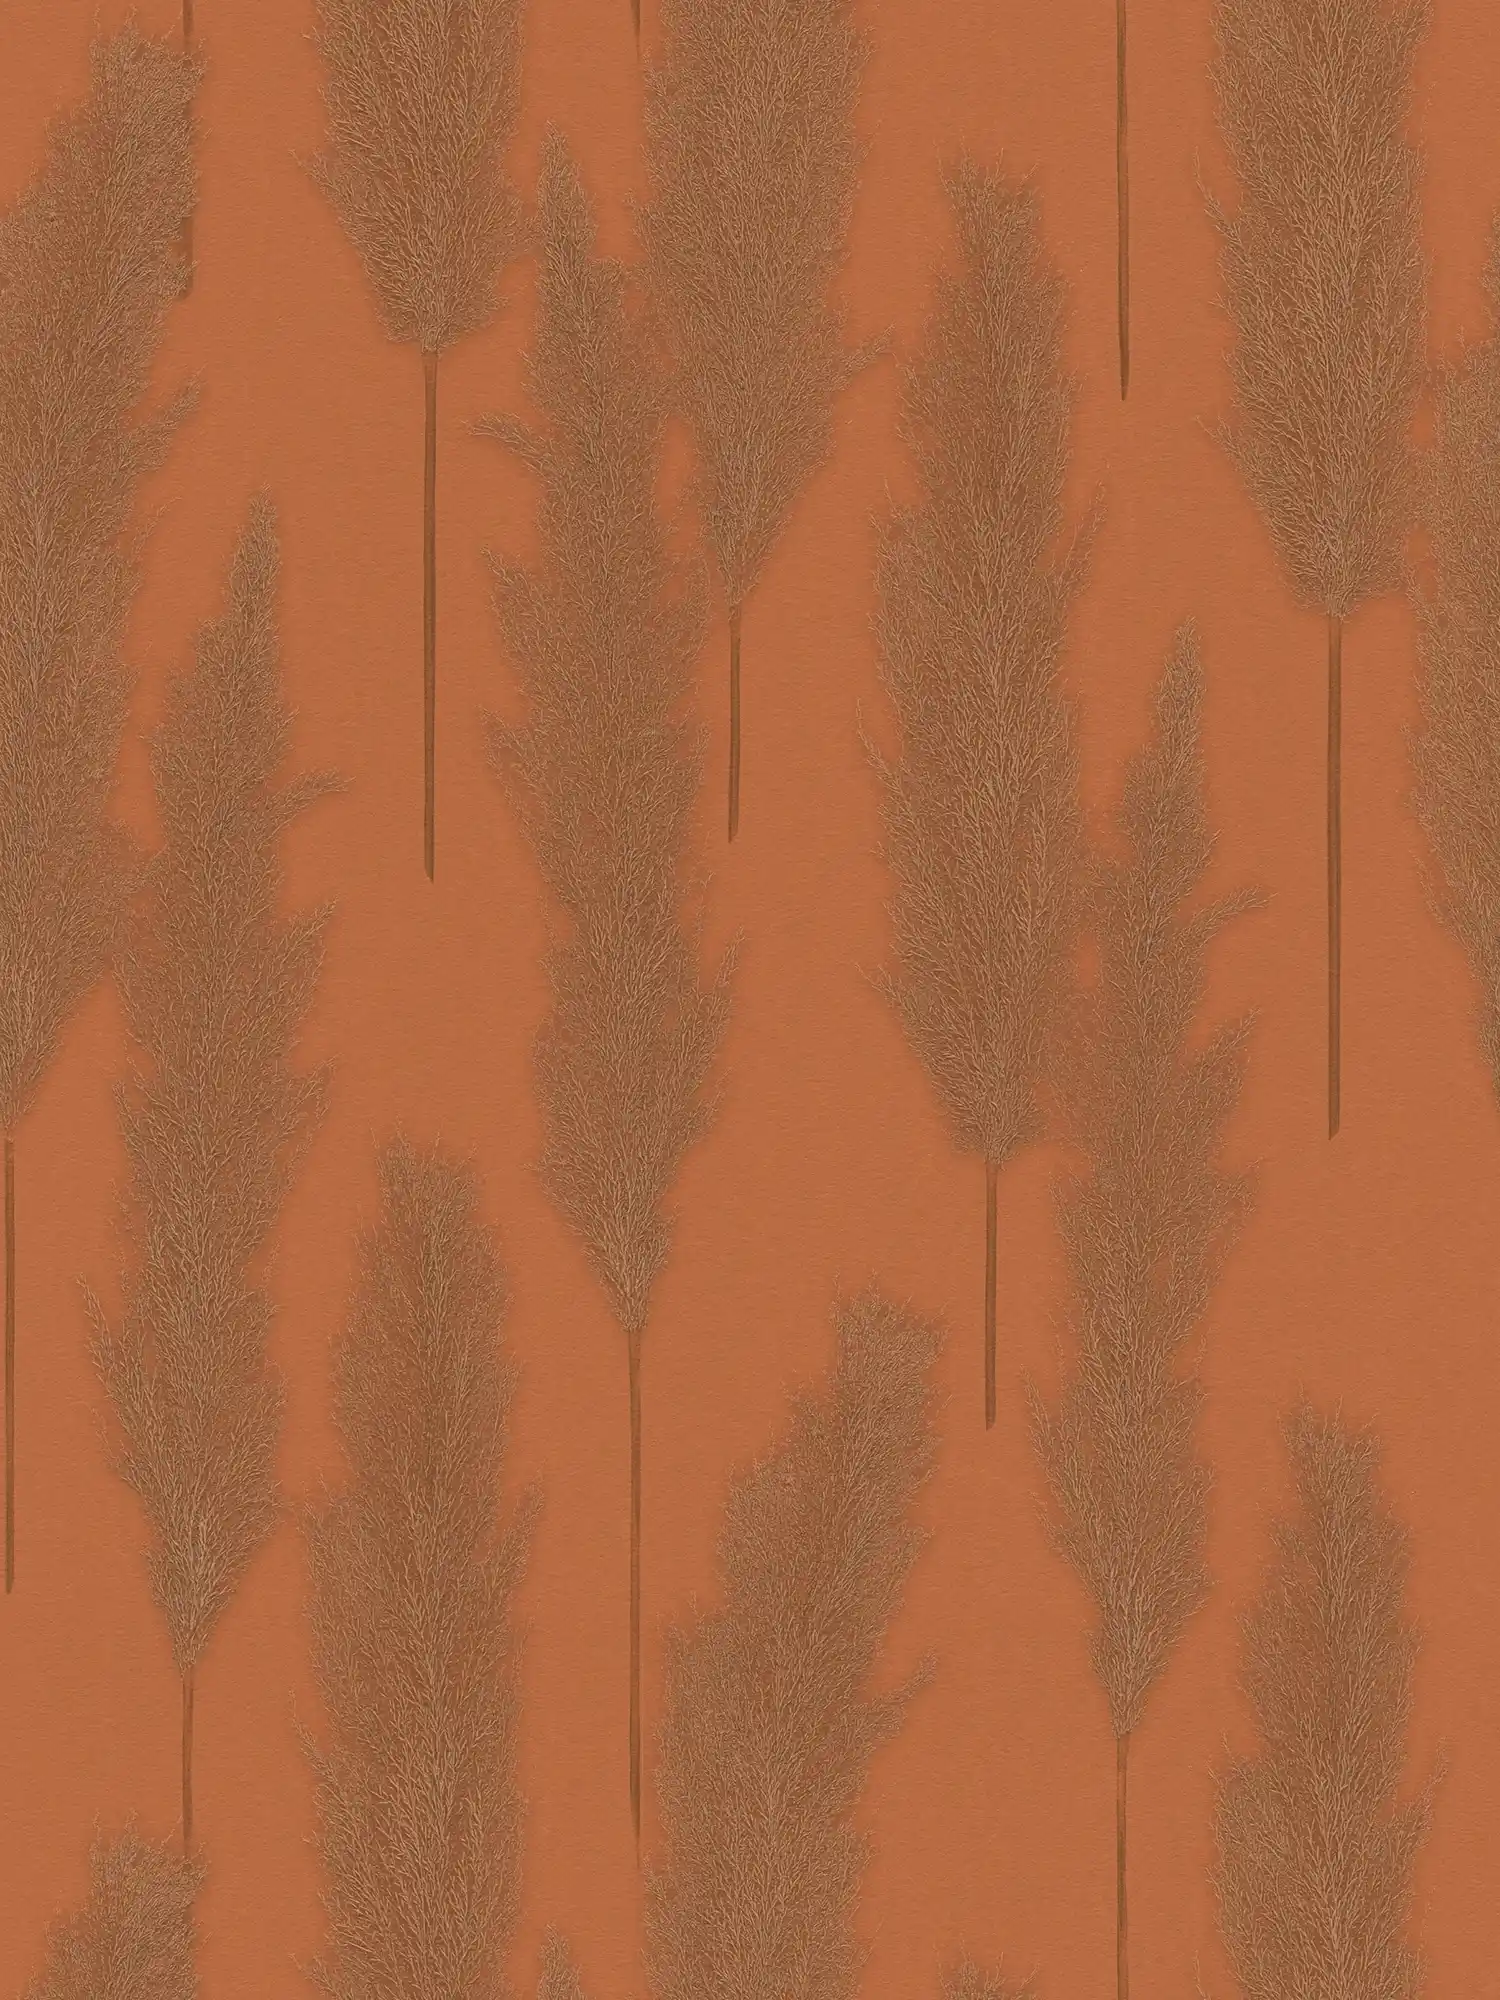 Natuurbehang met pampagrasmotief - bruin, metallic
